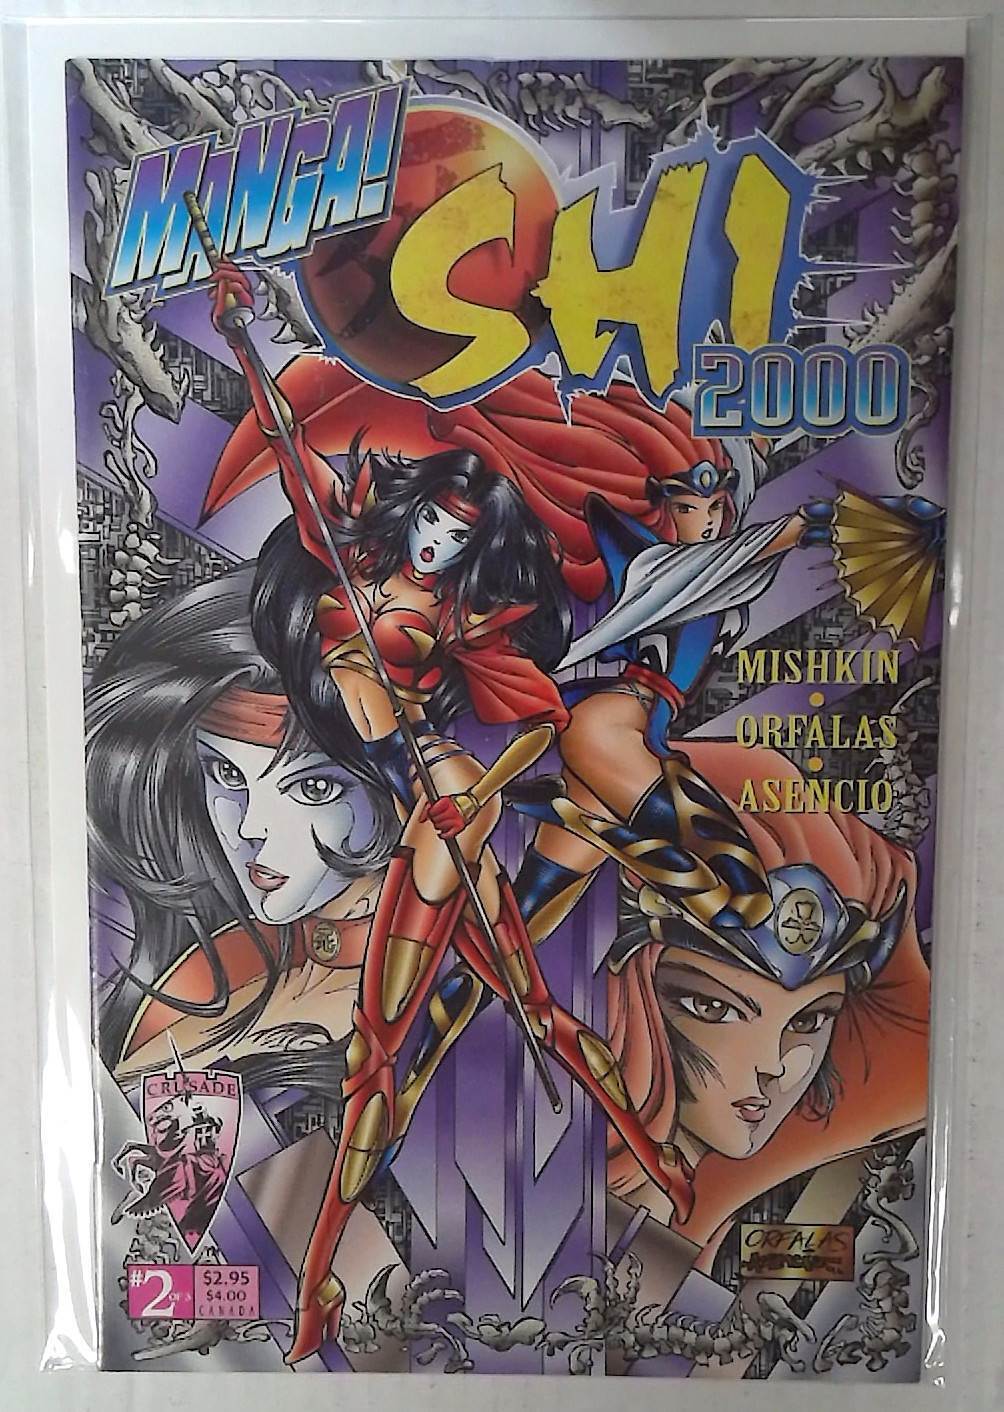 1997 Manga Shi 2000 #2 Crusade Comics NM 1st Print Comic Book